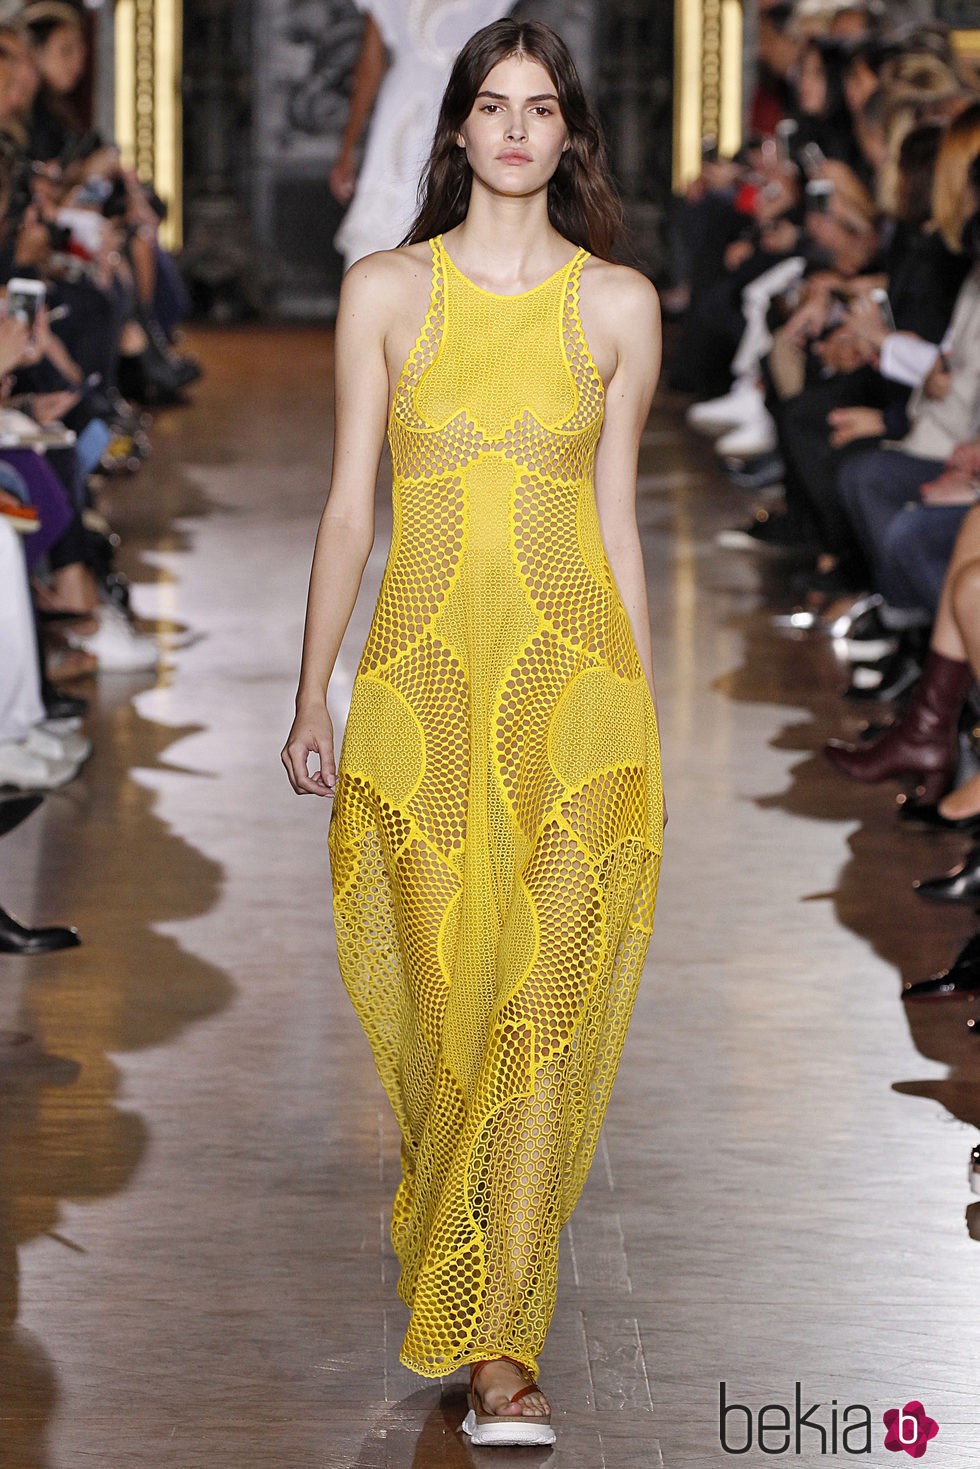 Vestido amarillo largo de la colección de primavera/verano 2016 de Stella McCartney en Paris Fashion Week